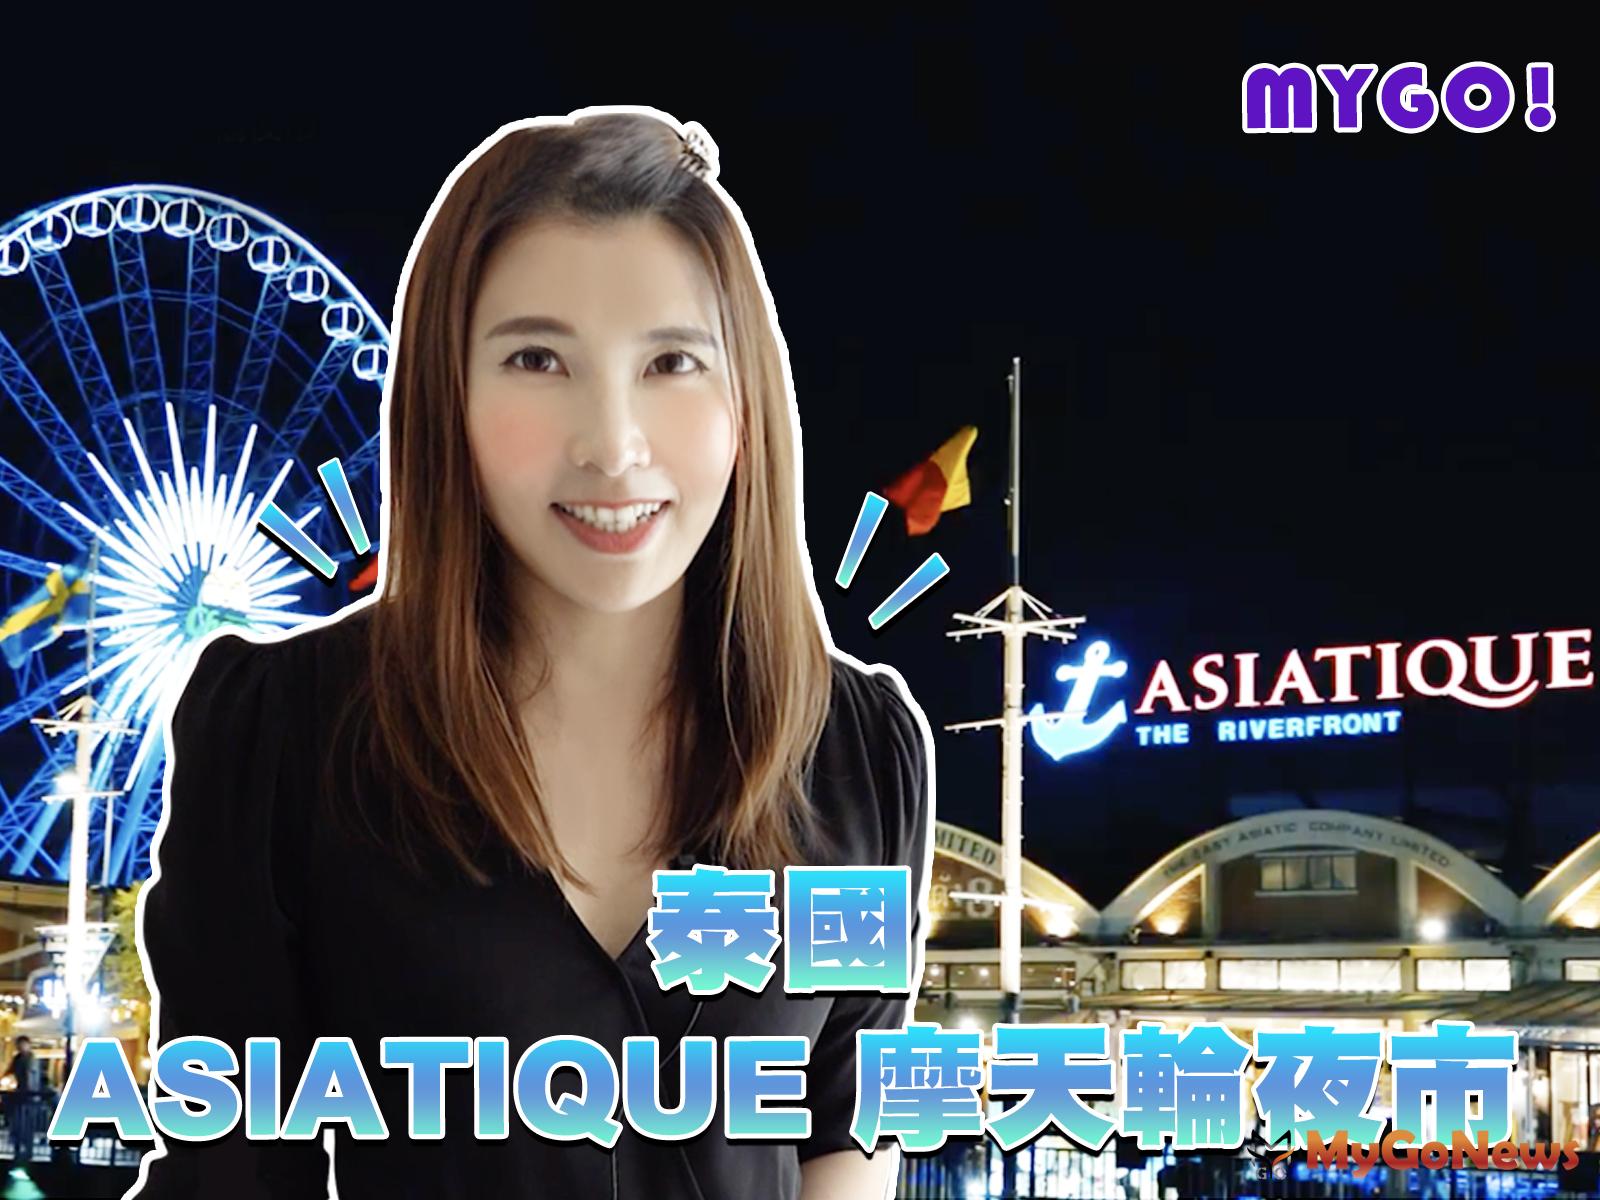 【開箱文】泰國曼谷超人氣夜市 — ASIATIQUE 河濱碼頭夜市